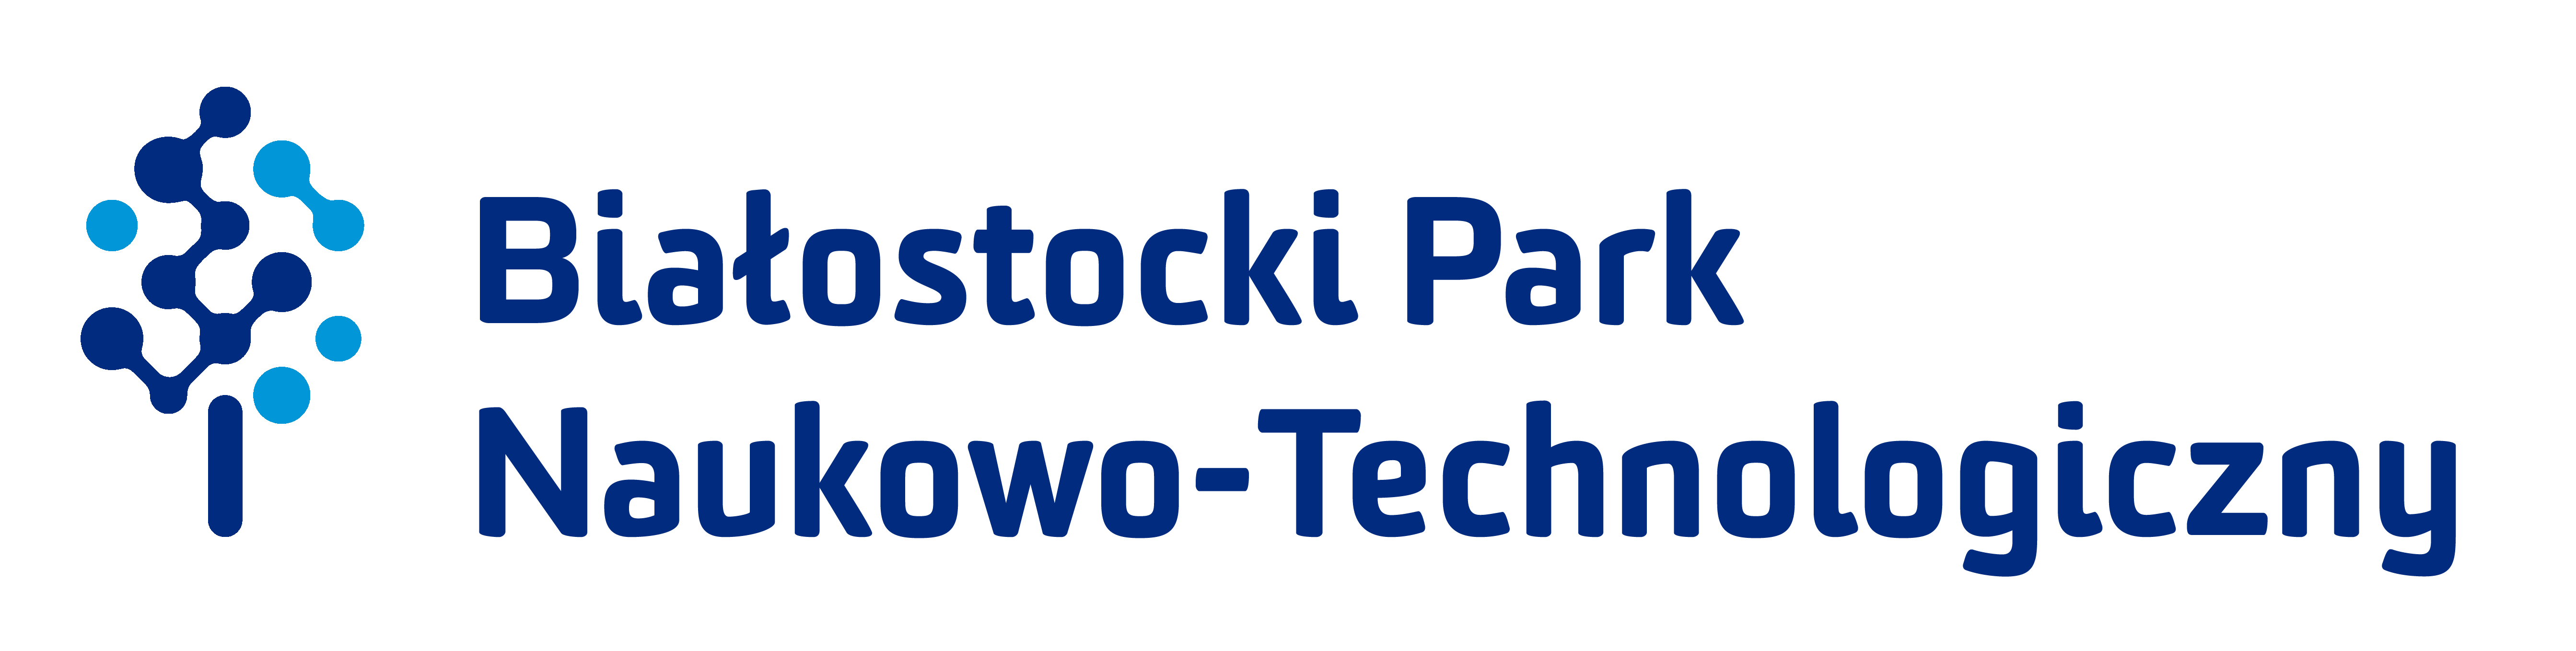 Białostocki Park Naukowo-Technologiczny